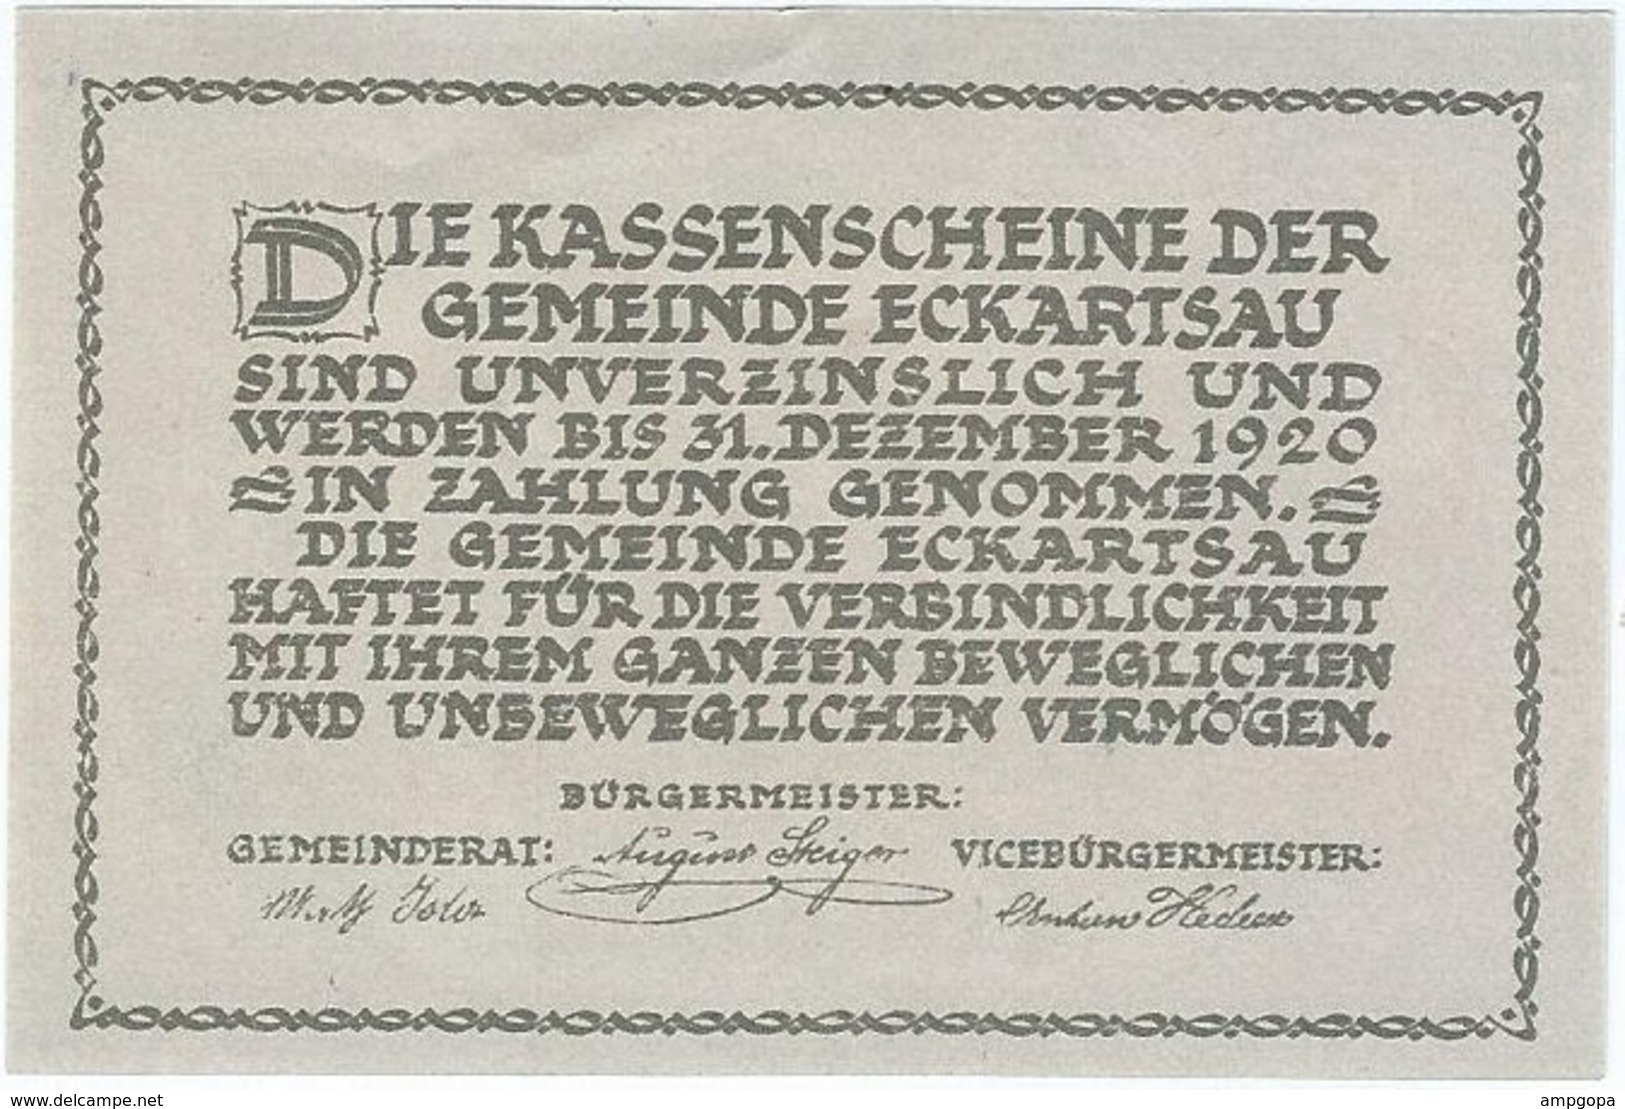 Austria (NOTGELD) 50 Heller 31-12-1920 Eckartsau KON 149 A.3 UNC Ref 3550-1 - Oostenrijk